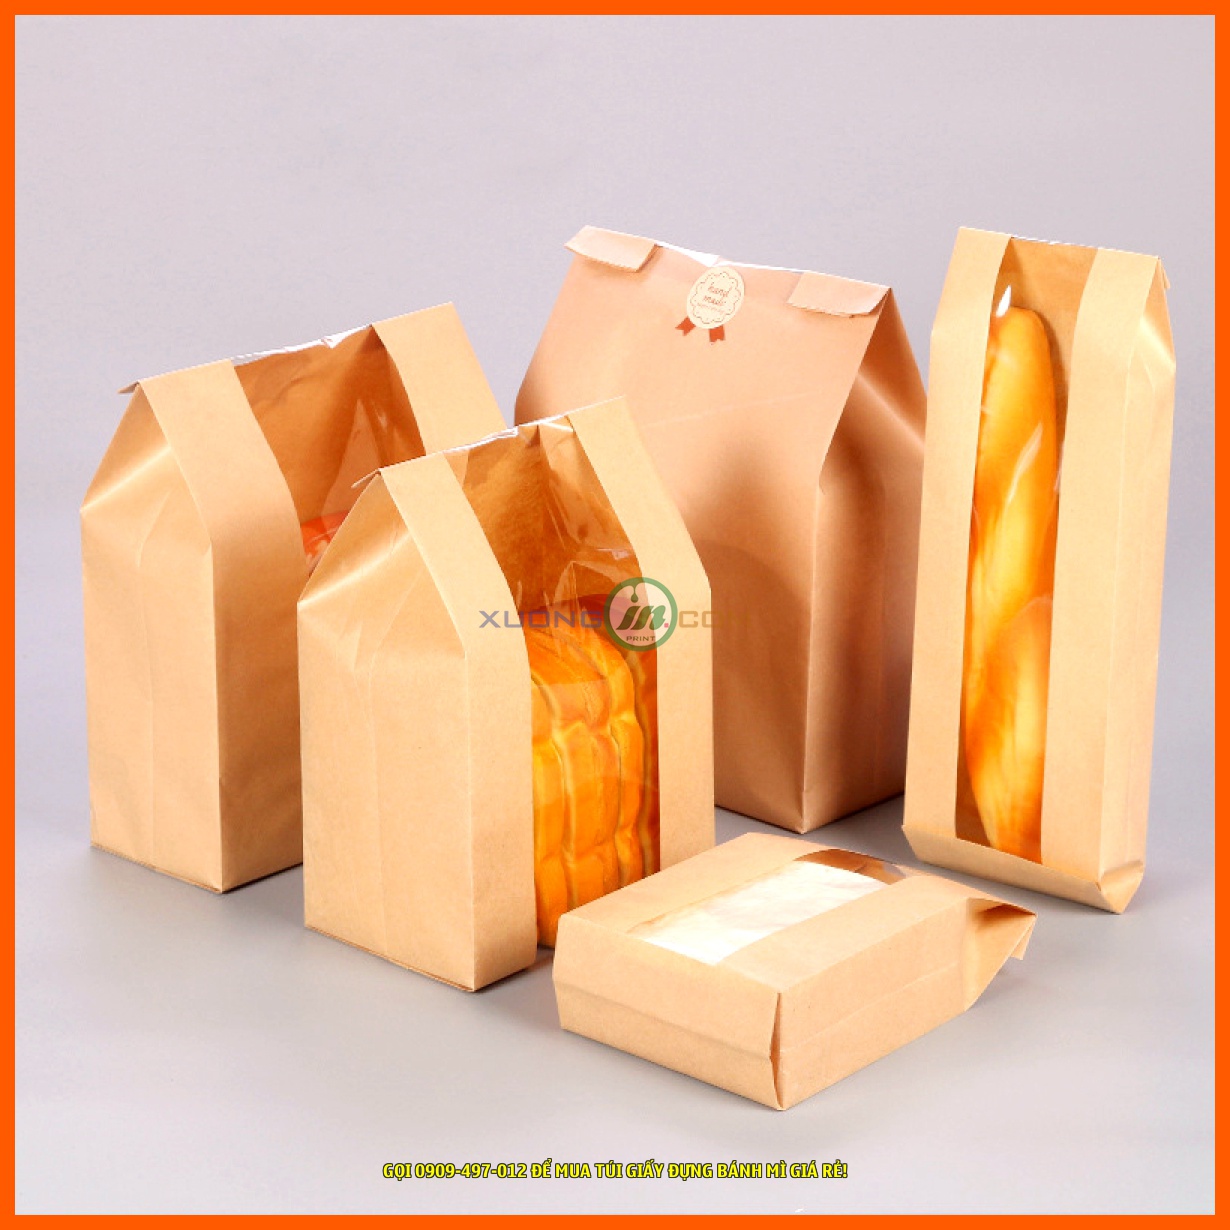 Địa chỉ bán túi giấy đựng bánh mì tốt nhất tại TpHCM là 26/4A2 Nguyễn Văn Quá, Quận 12, TpHCM